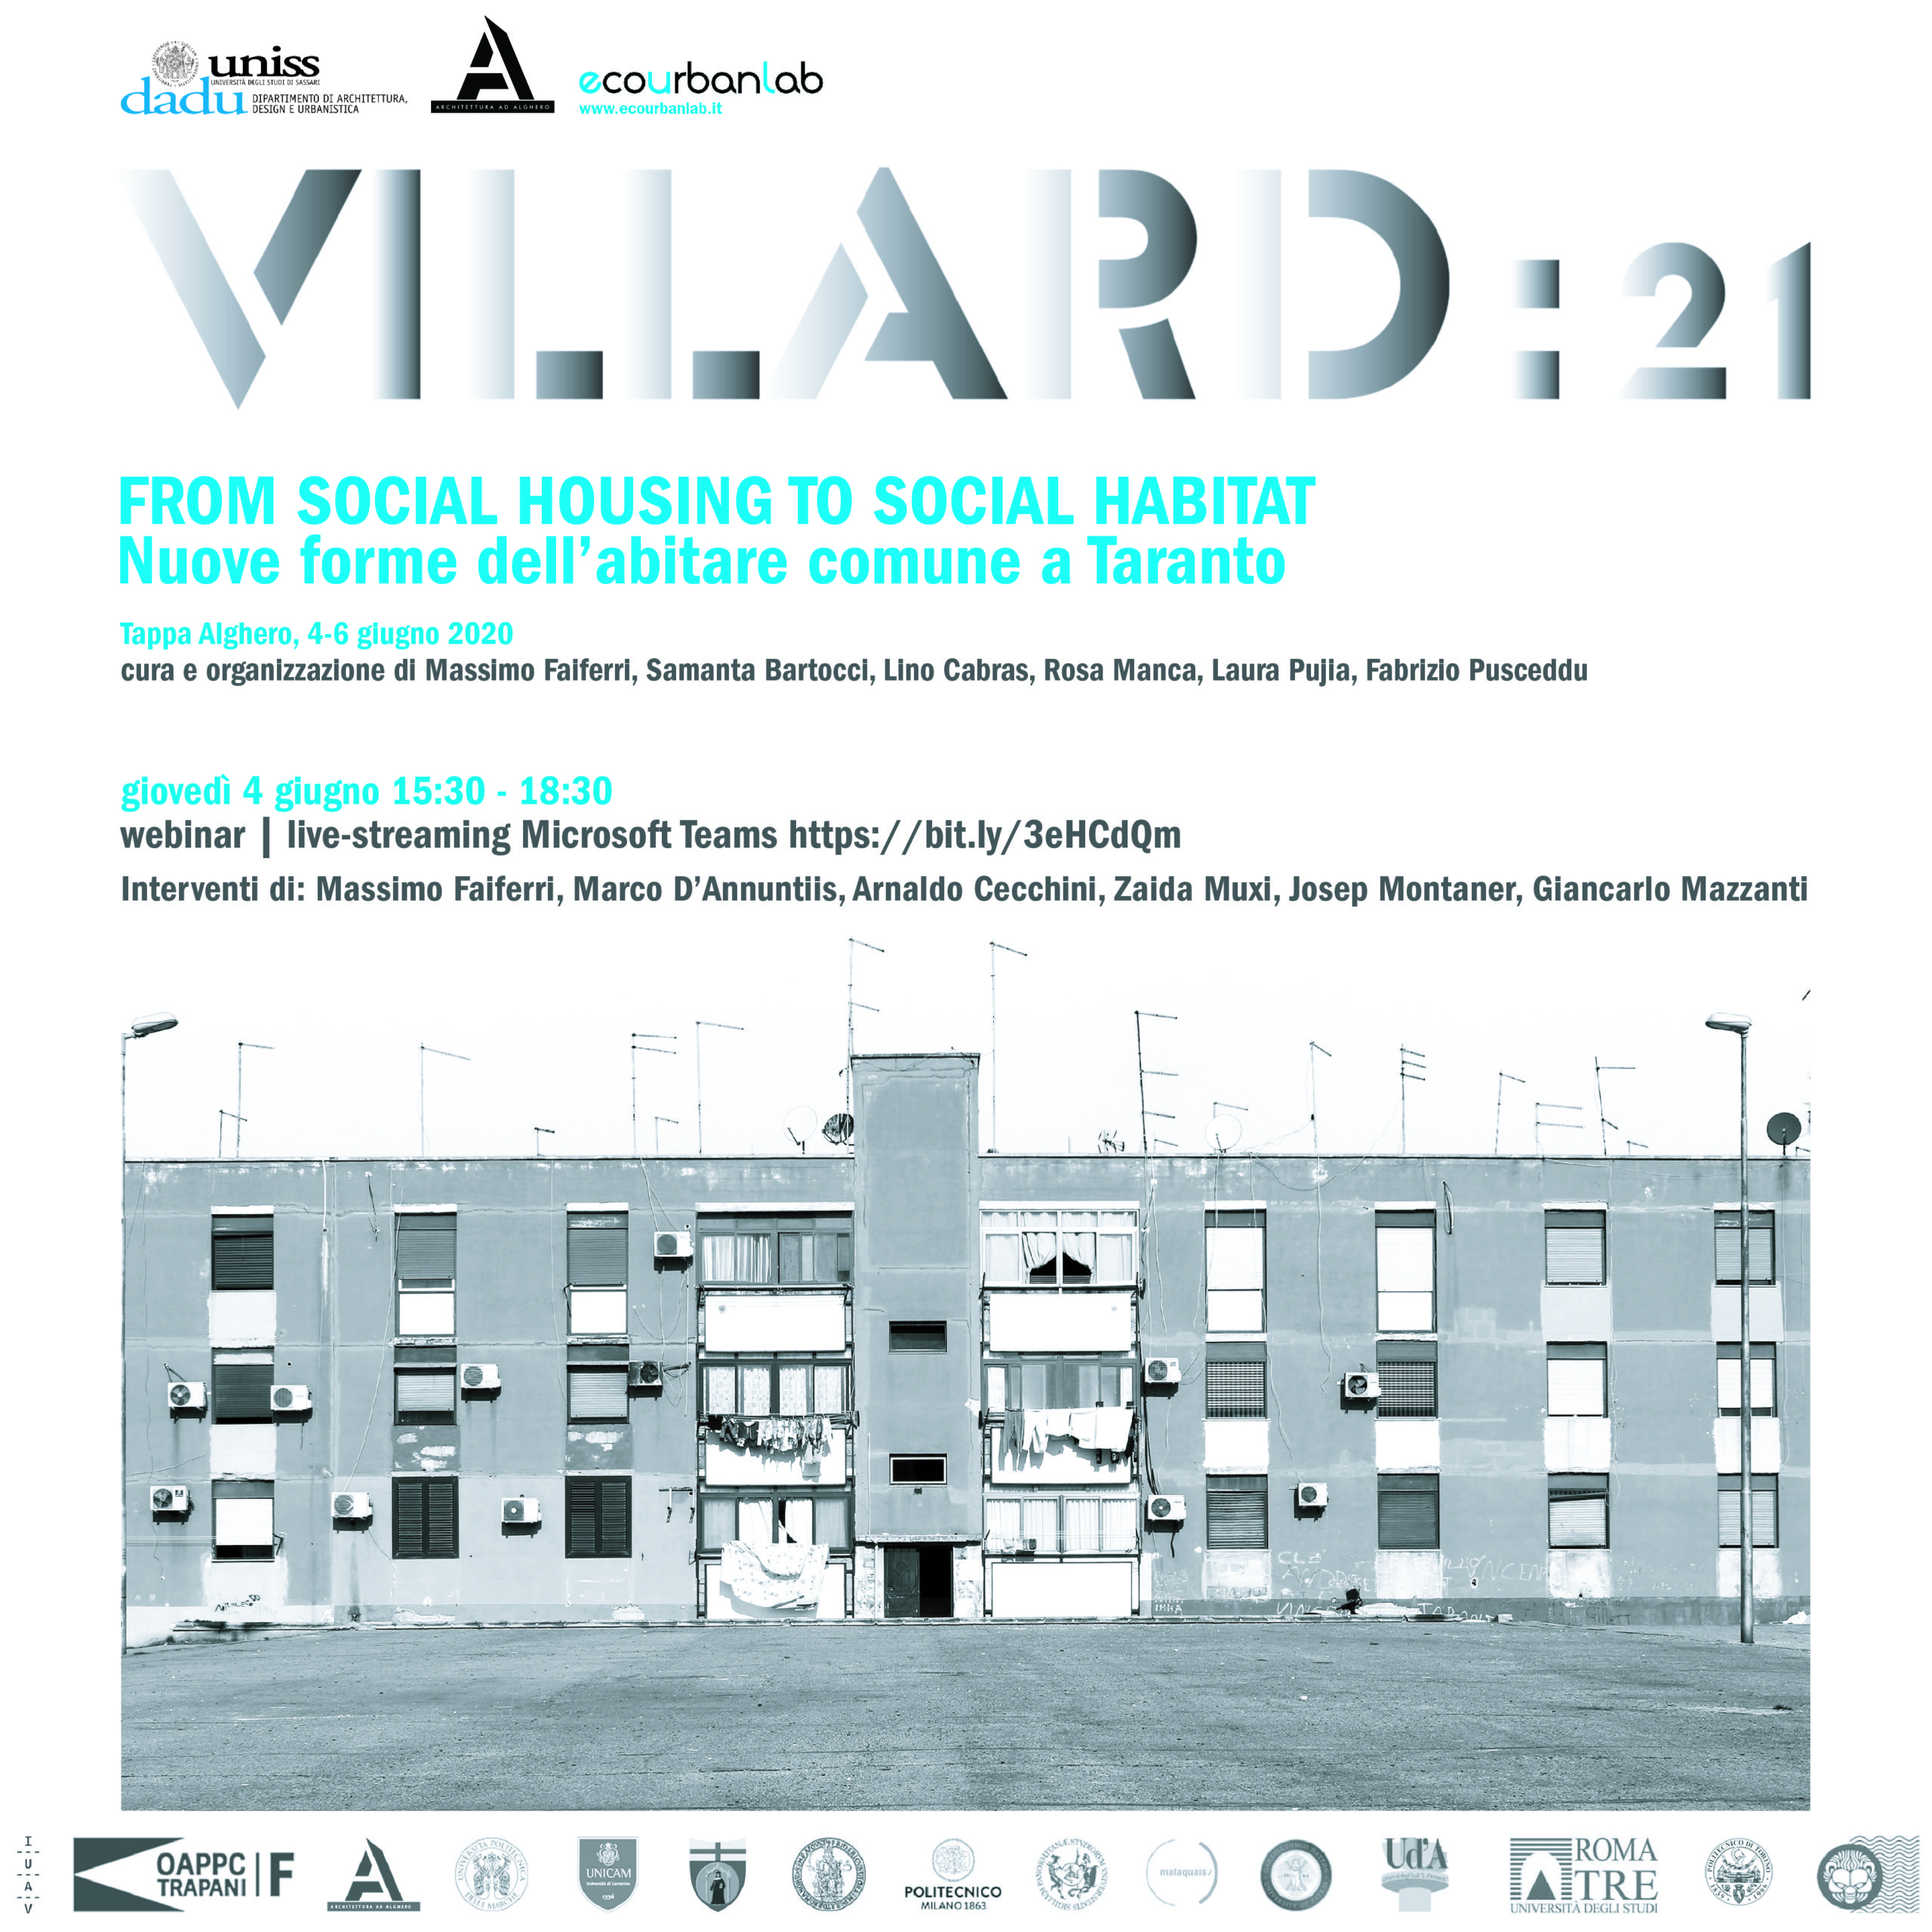 From social housing to social habitat